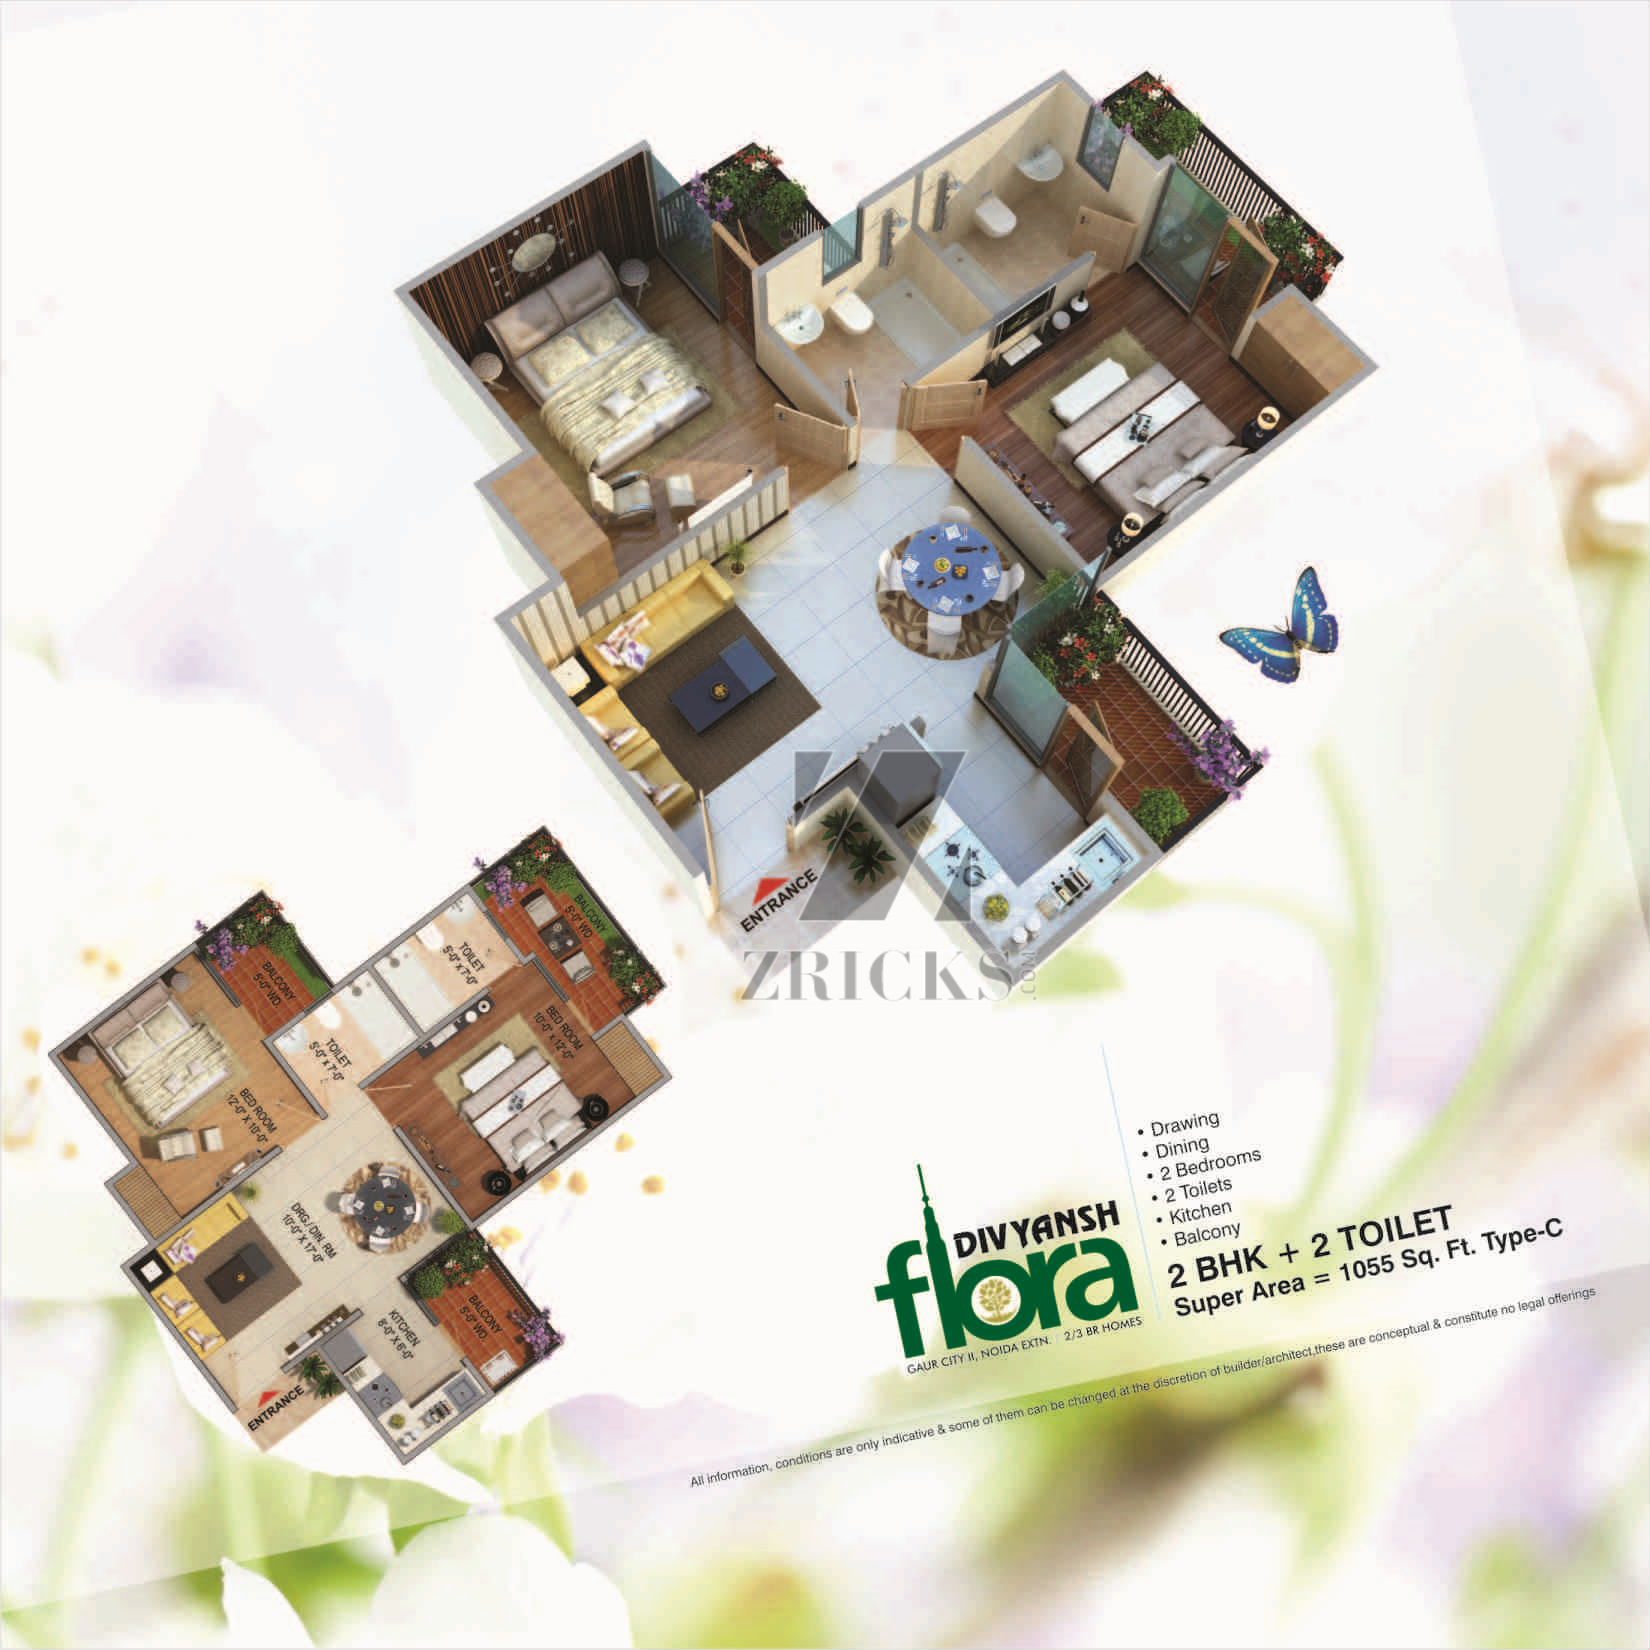 Divyansh Flora Floor Plan